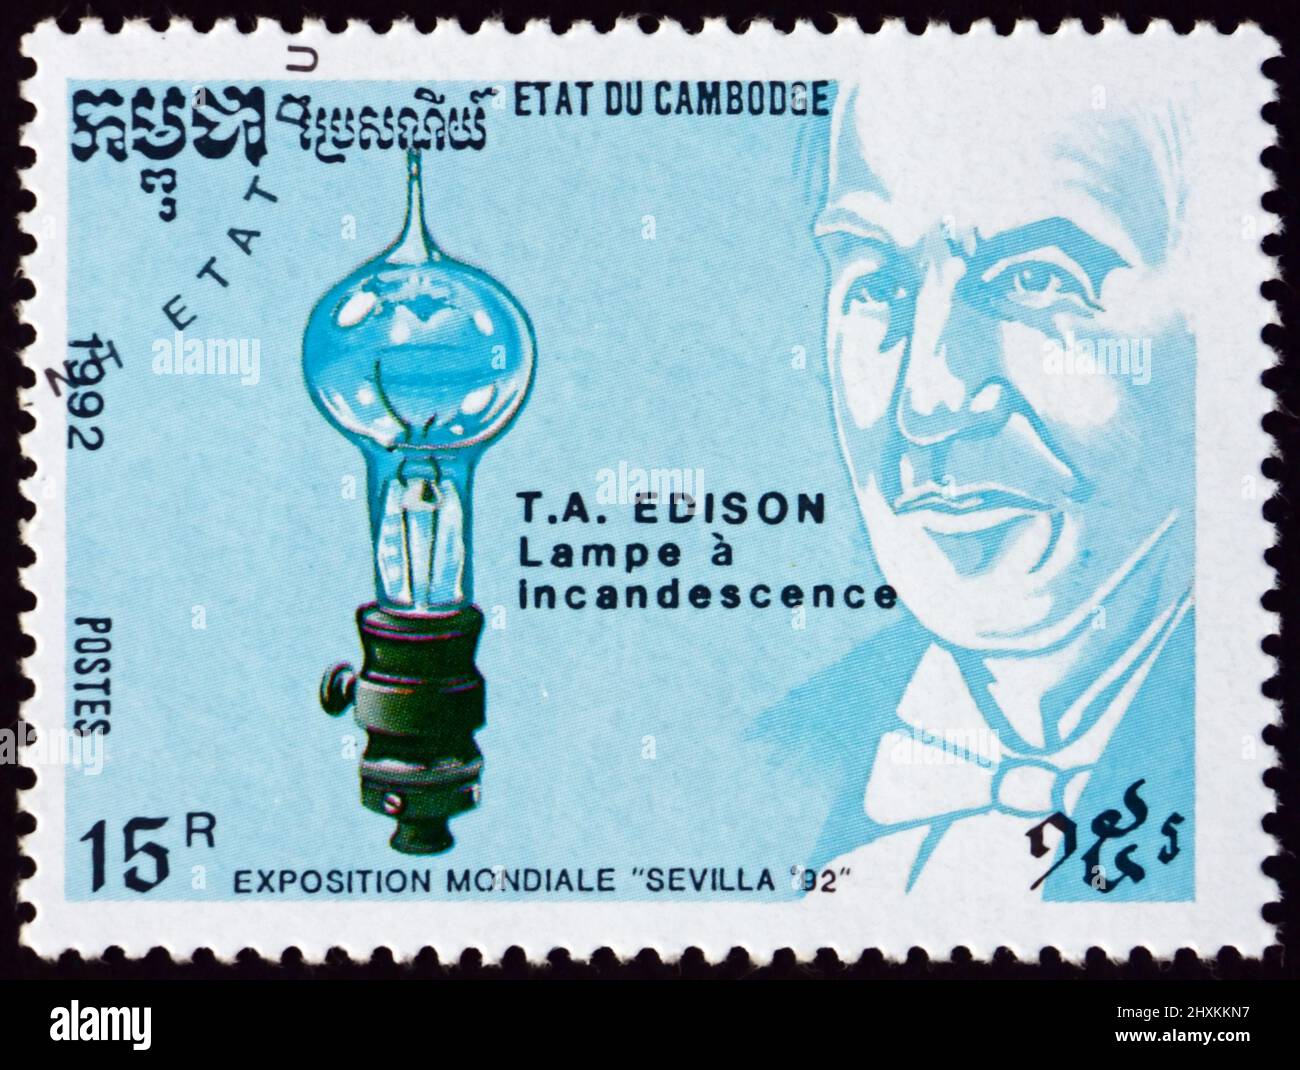 CAMBODGE - VERS 1992: Un timbre imprimé au Cambodge montre Thomas Alva Edison, inventeur et homme d'affaires, ampoule électrique, vers 1992 Banque D'Images